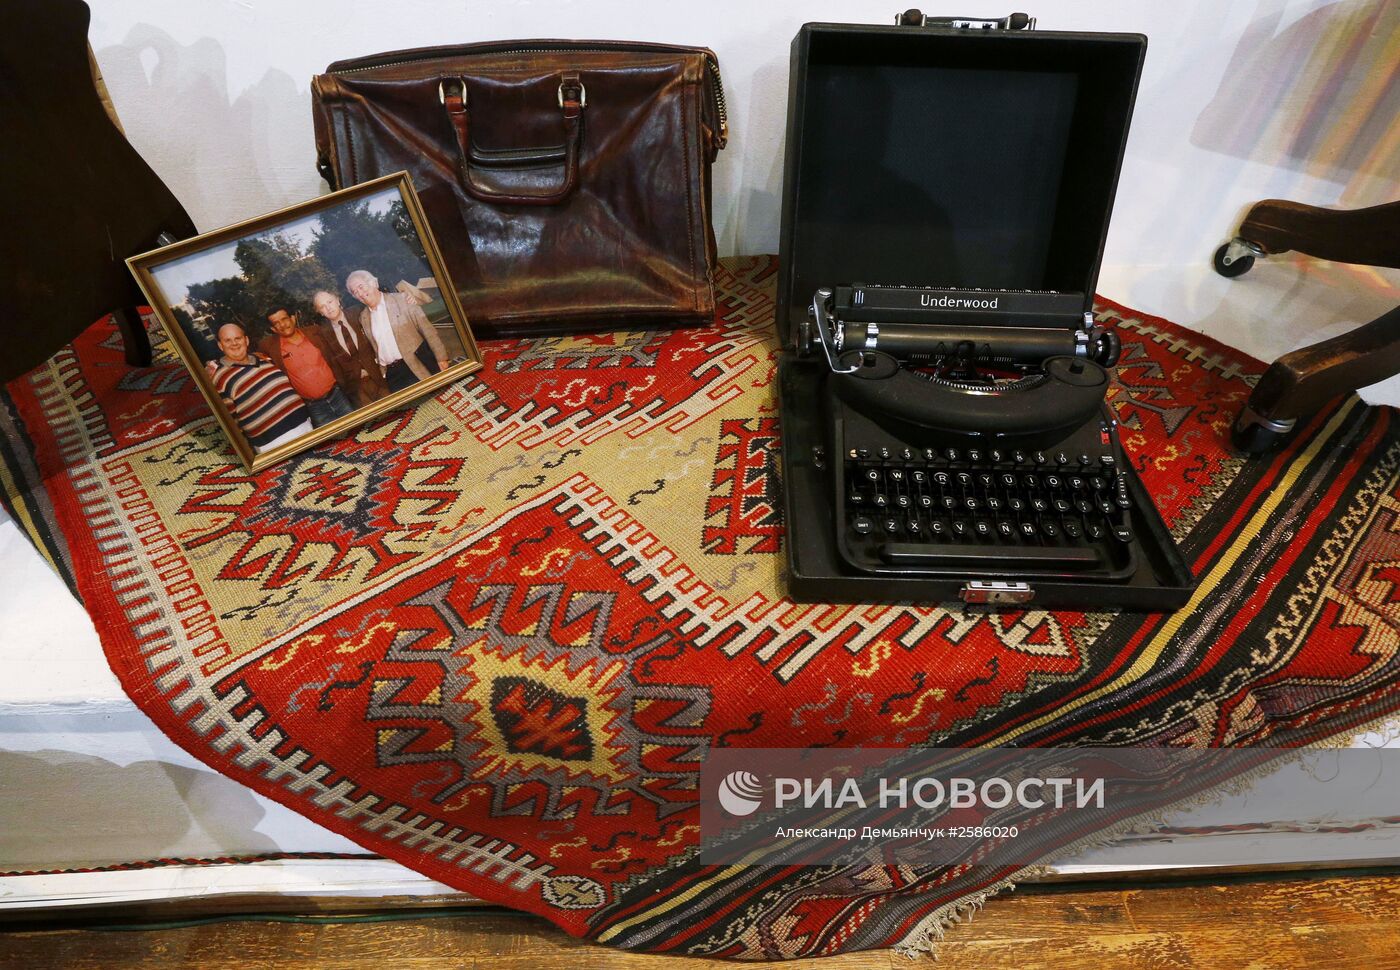 Личные вещи лауреата Нобелевской премии по литературе И.Бродского представлены в музее А.Ахматовой